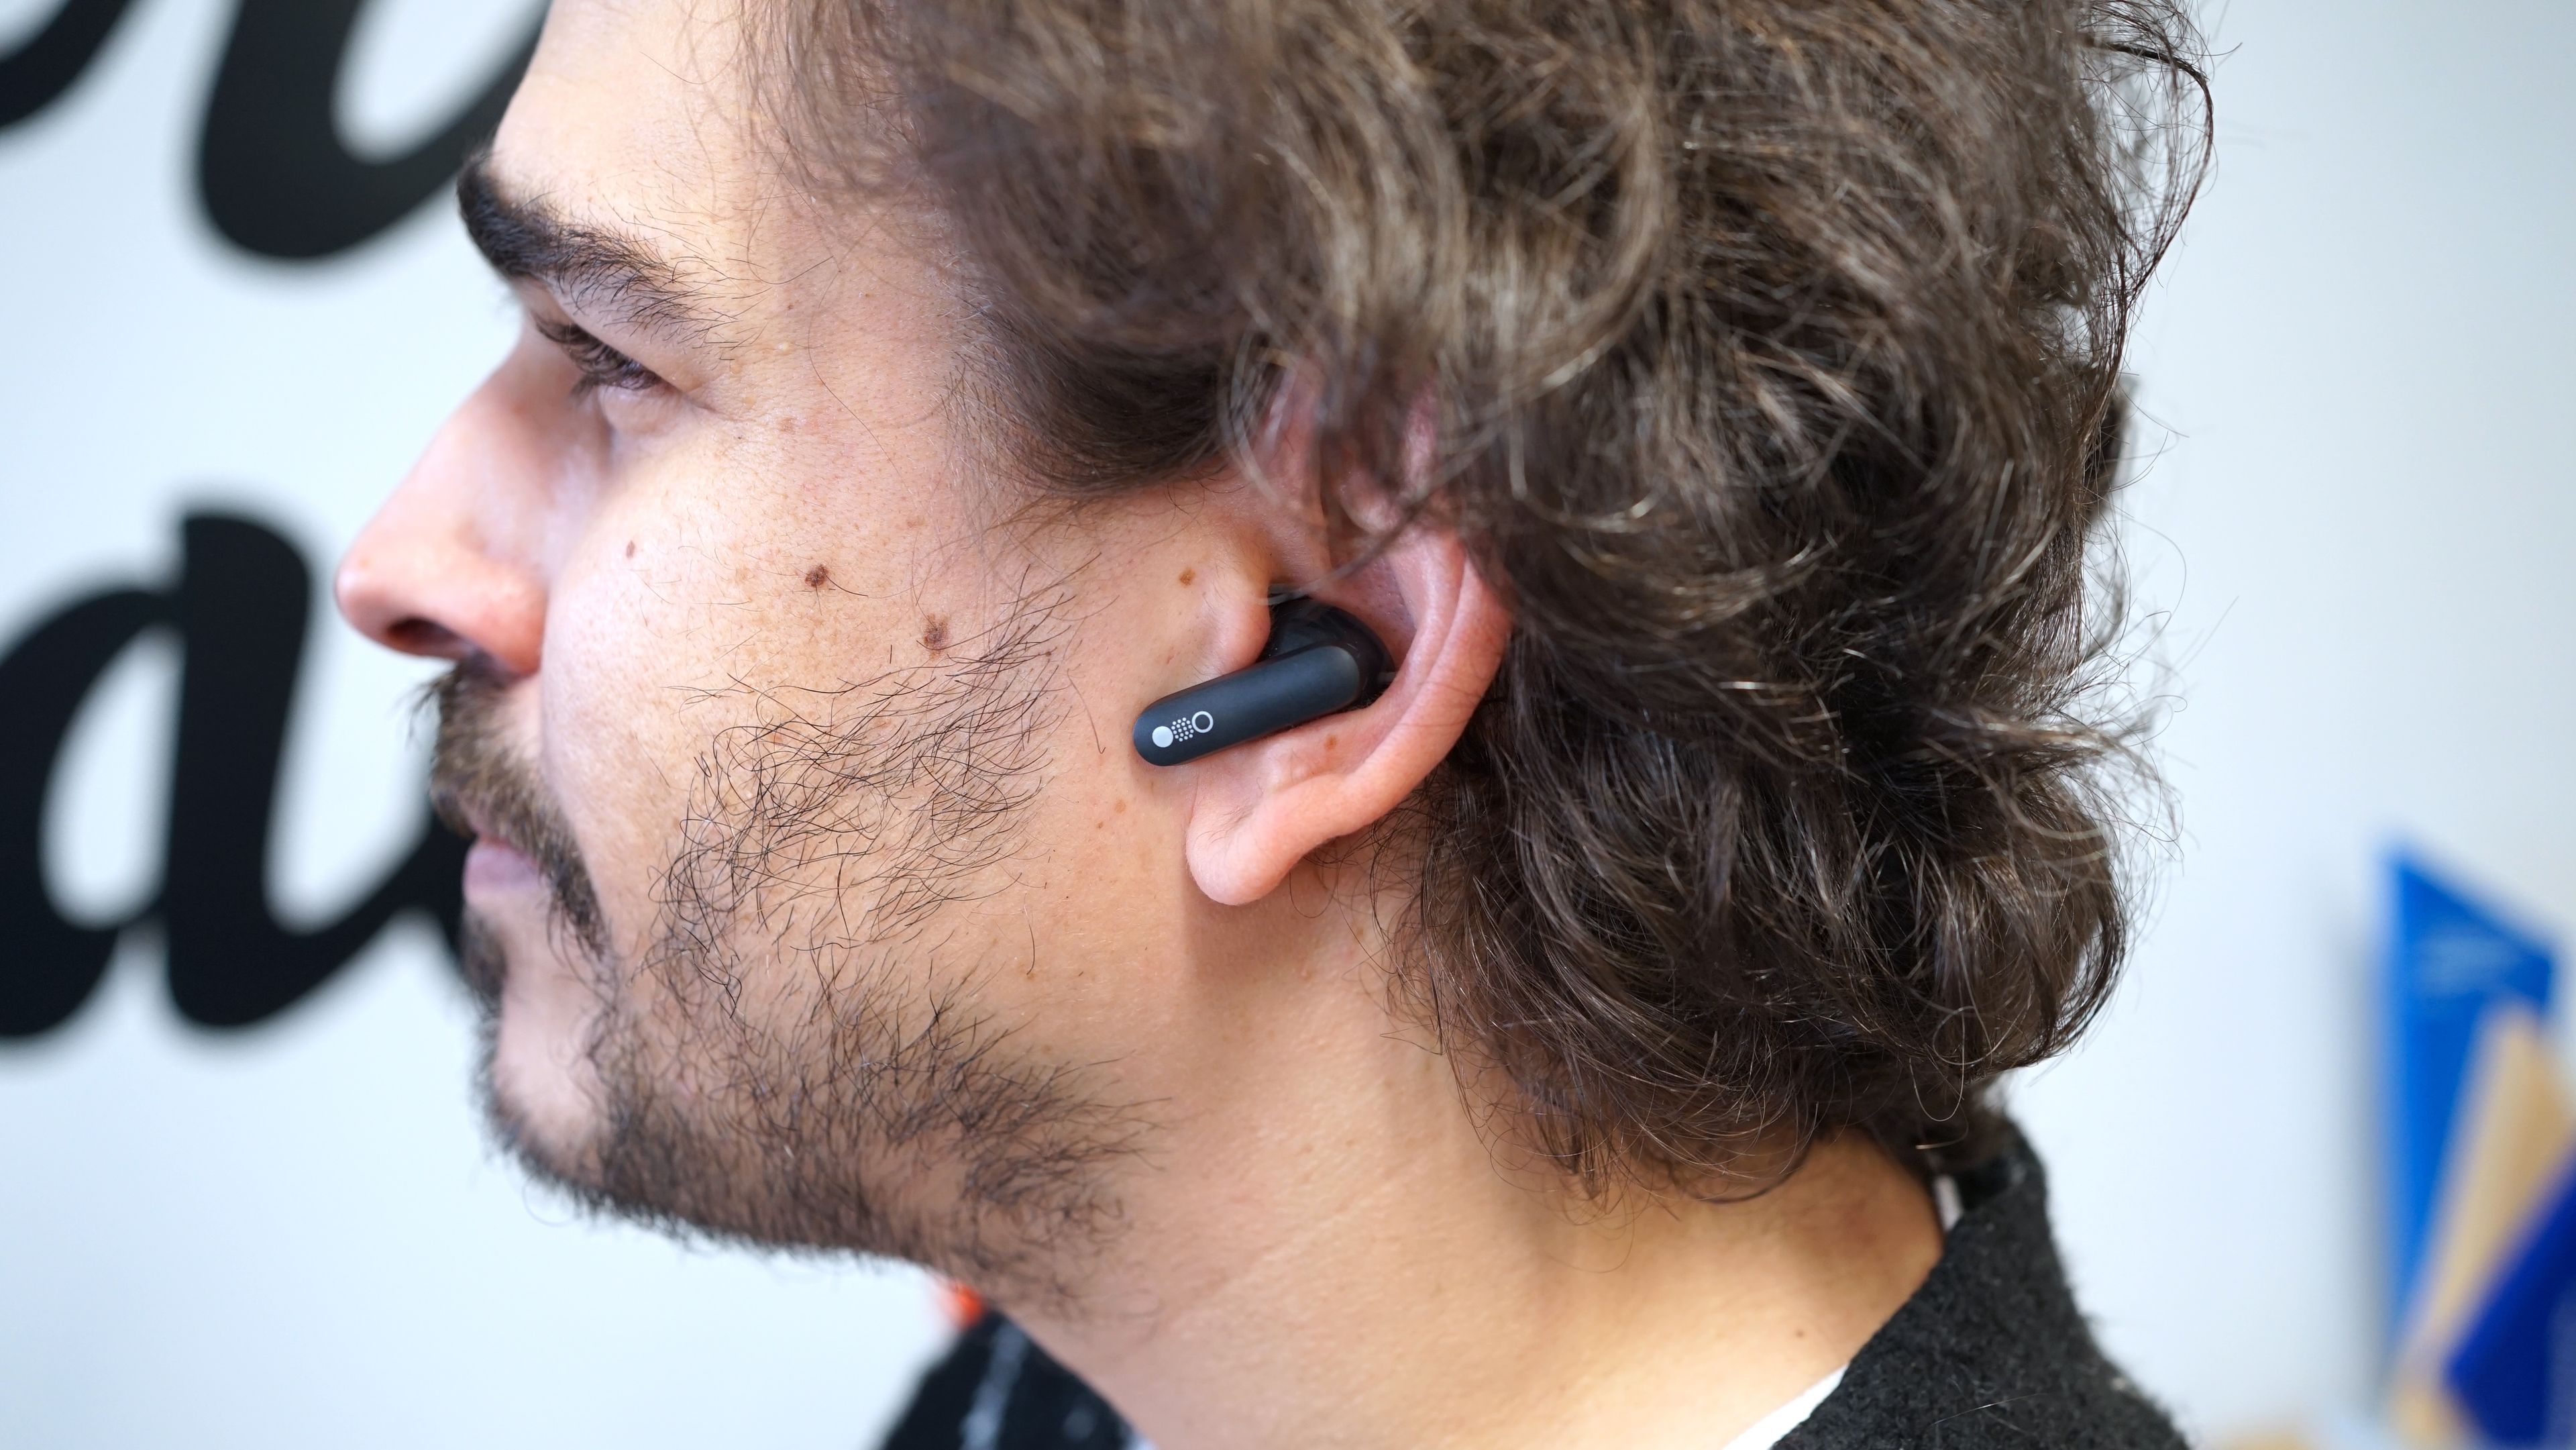 CMF Buds Pro, análisis y opinión de los auriculares con cancelación de  ruido